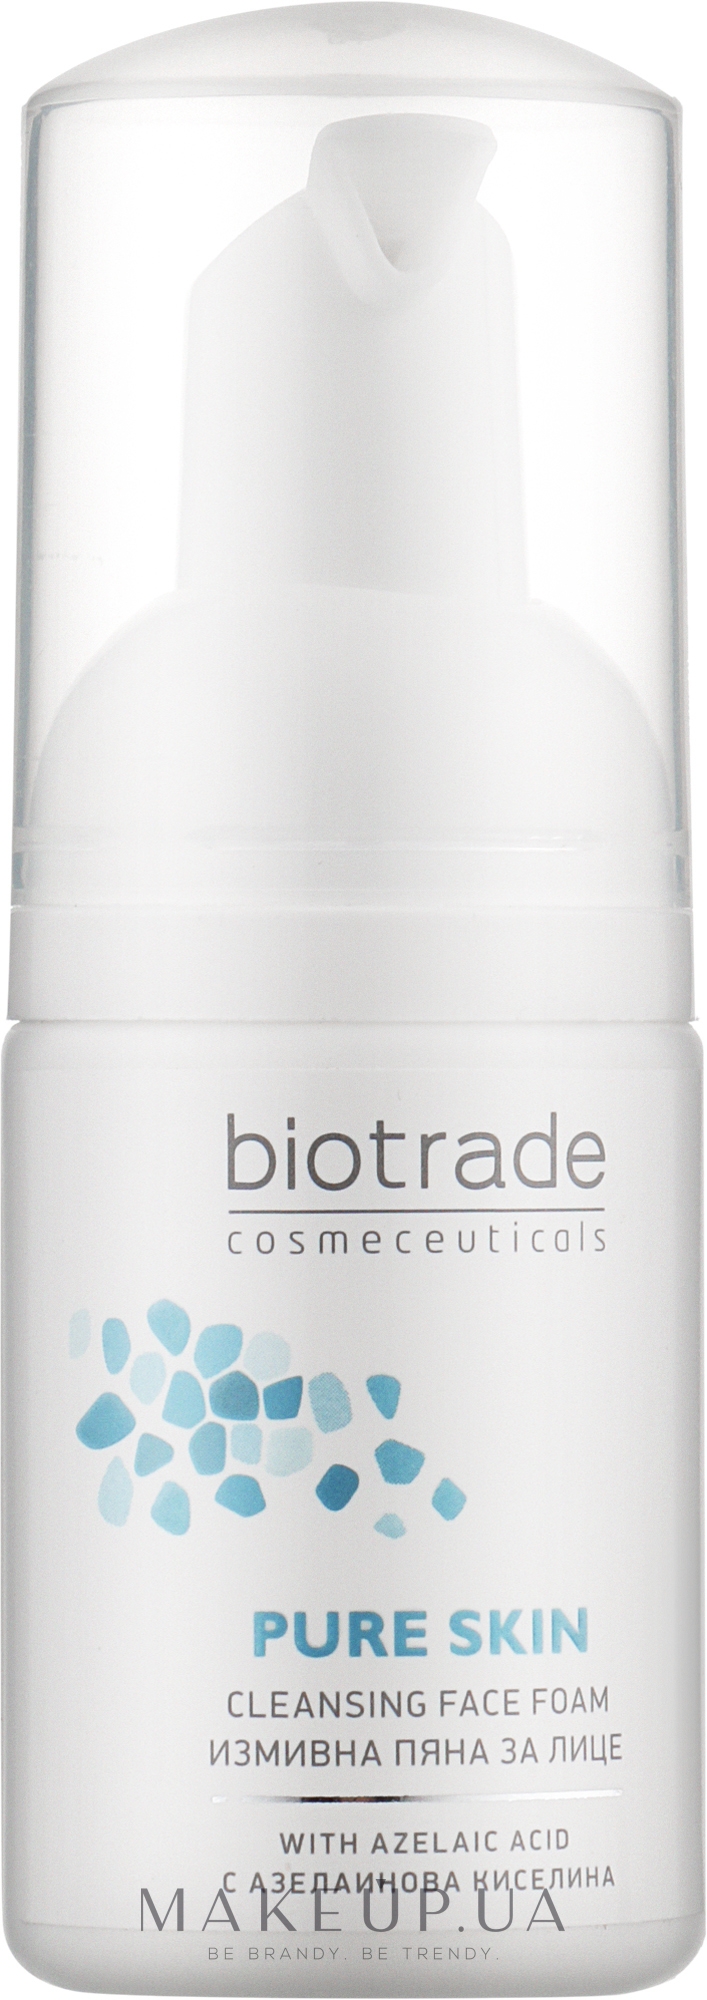 Пенка для деликатного умывания c эффектом сужения пор и увлажнения - Biotrade Pure Skin Cleansing Face Foam (мини) — фото 20ml